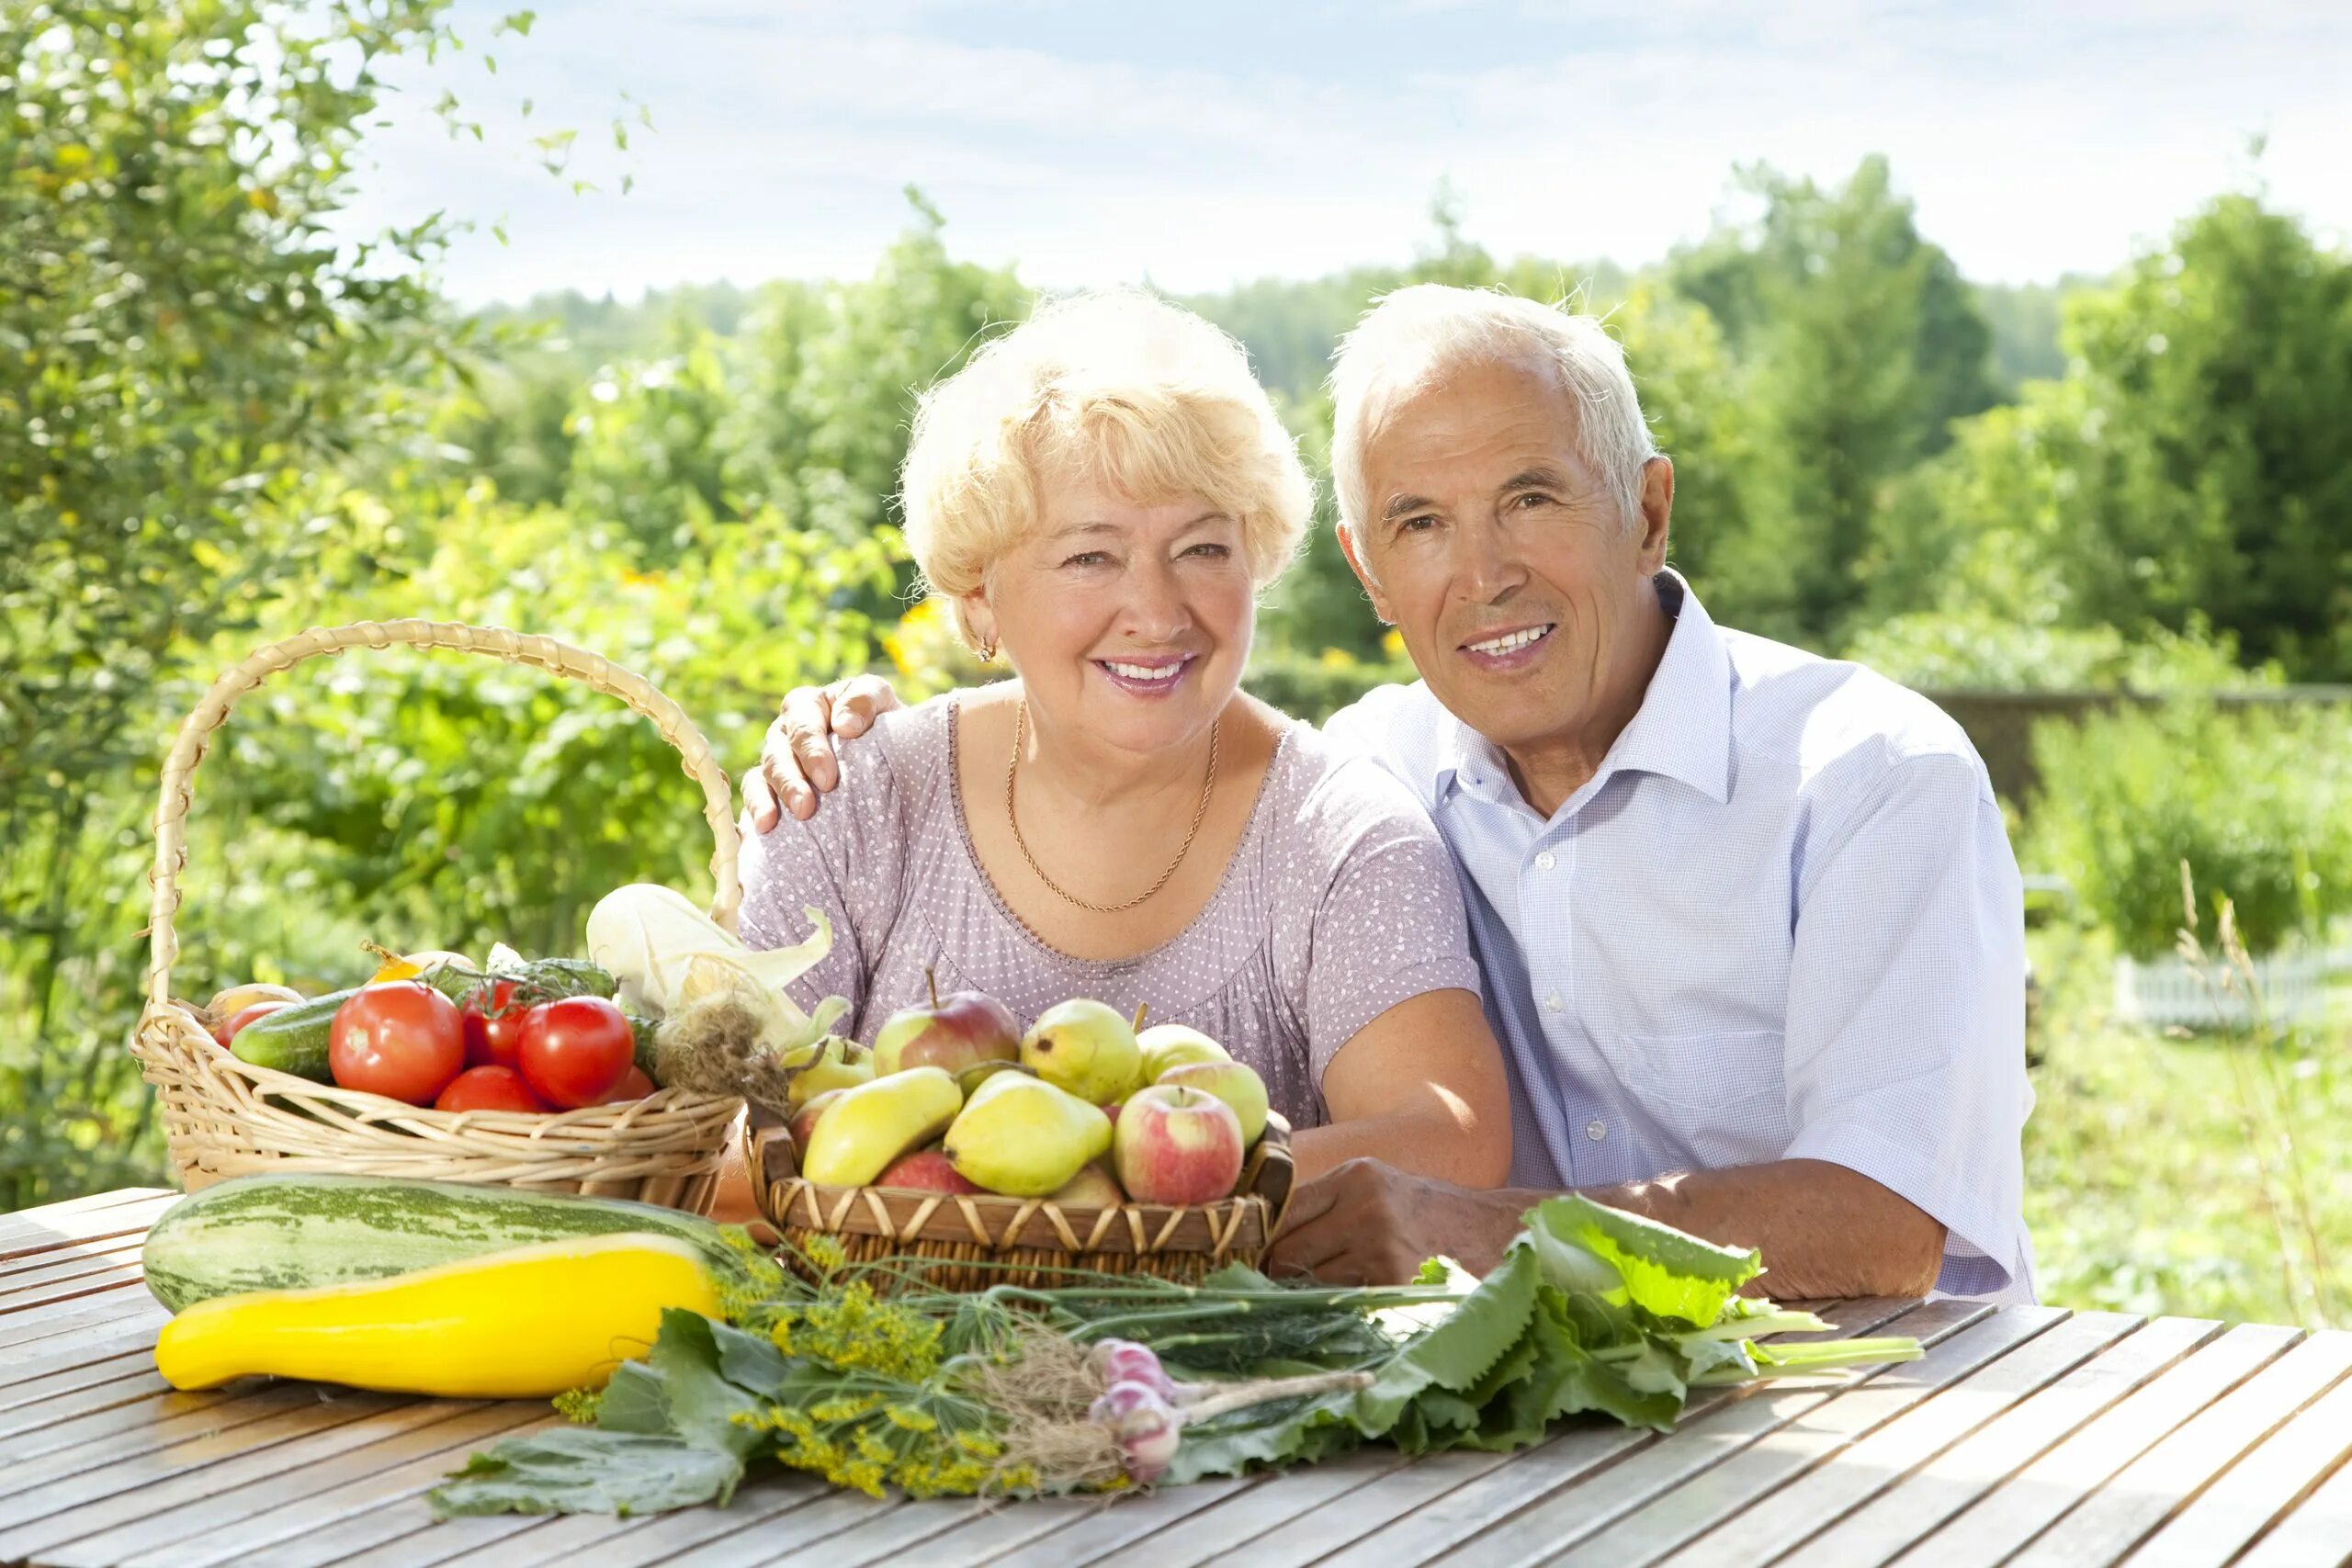 Ютуб долголетие. Здоровое питание для пожилых. Питание в пожилом возрасте. Рациональное питание пожилых. ЗОЖ для пожилых.